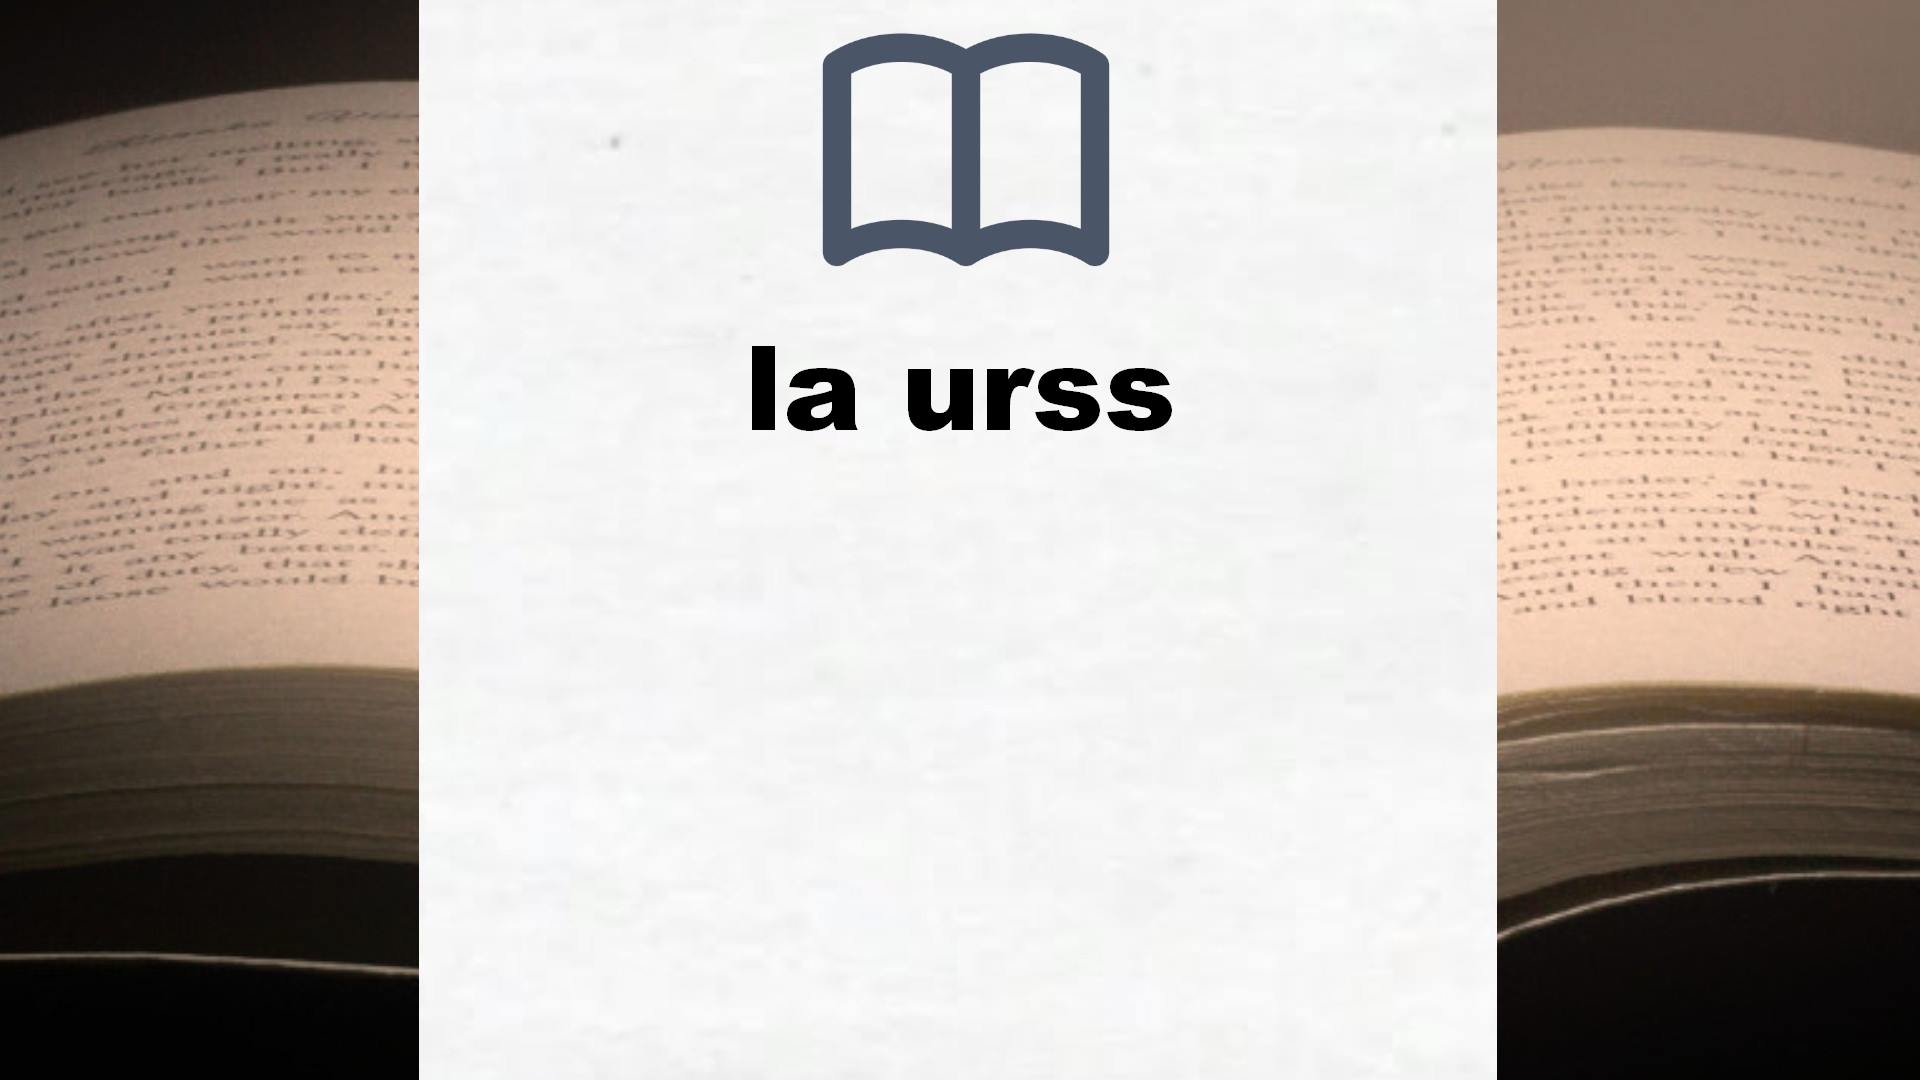 Libros sobre la urss